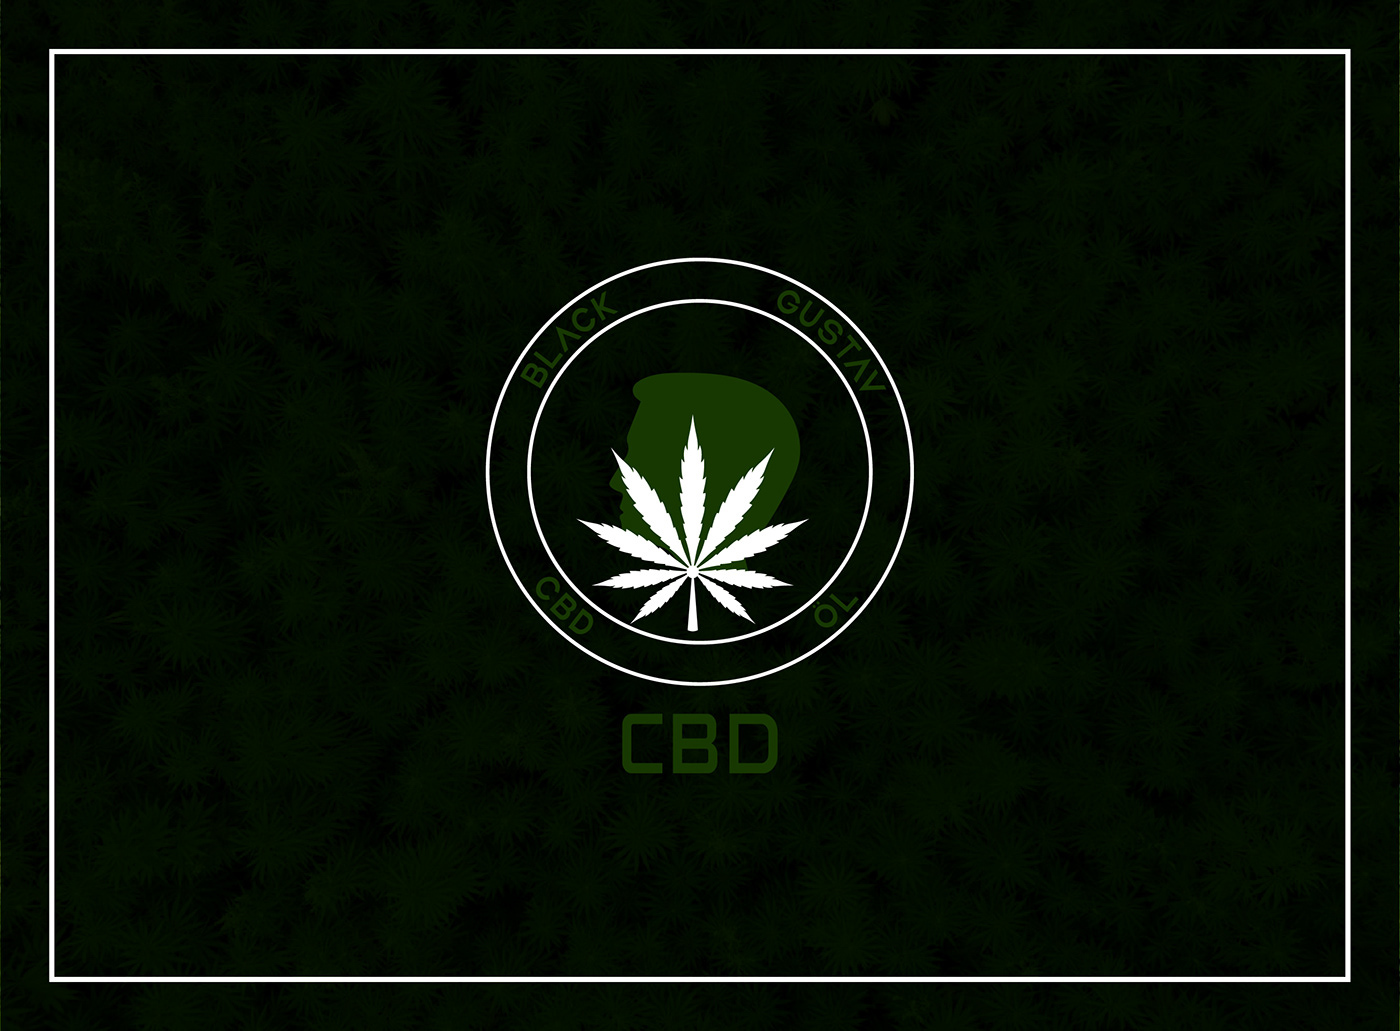 logo logos Logo Design CBD cannabis branding  brand identity Brand Design visual identity Custom